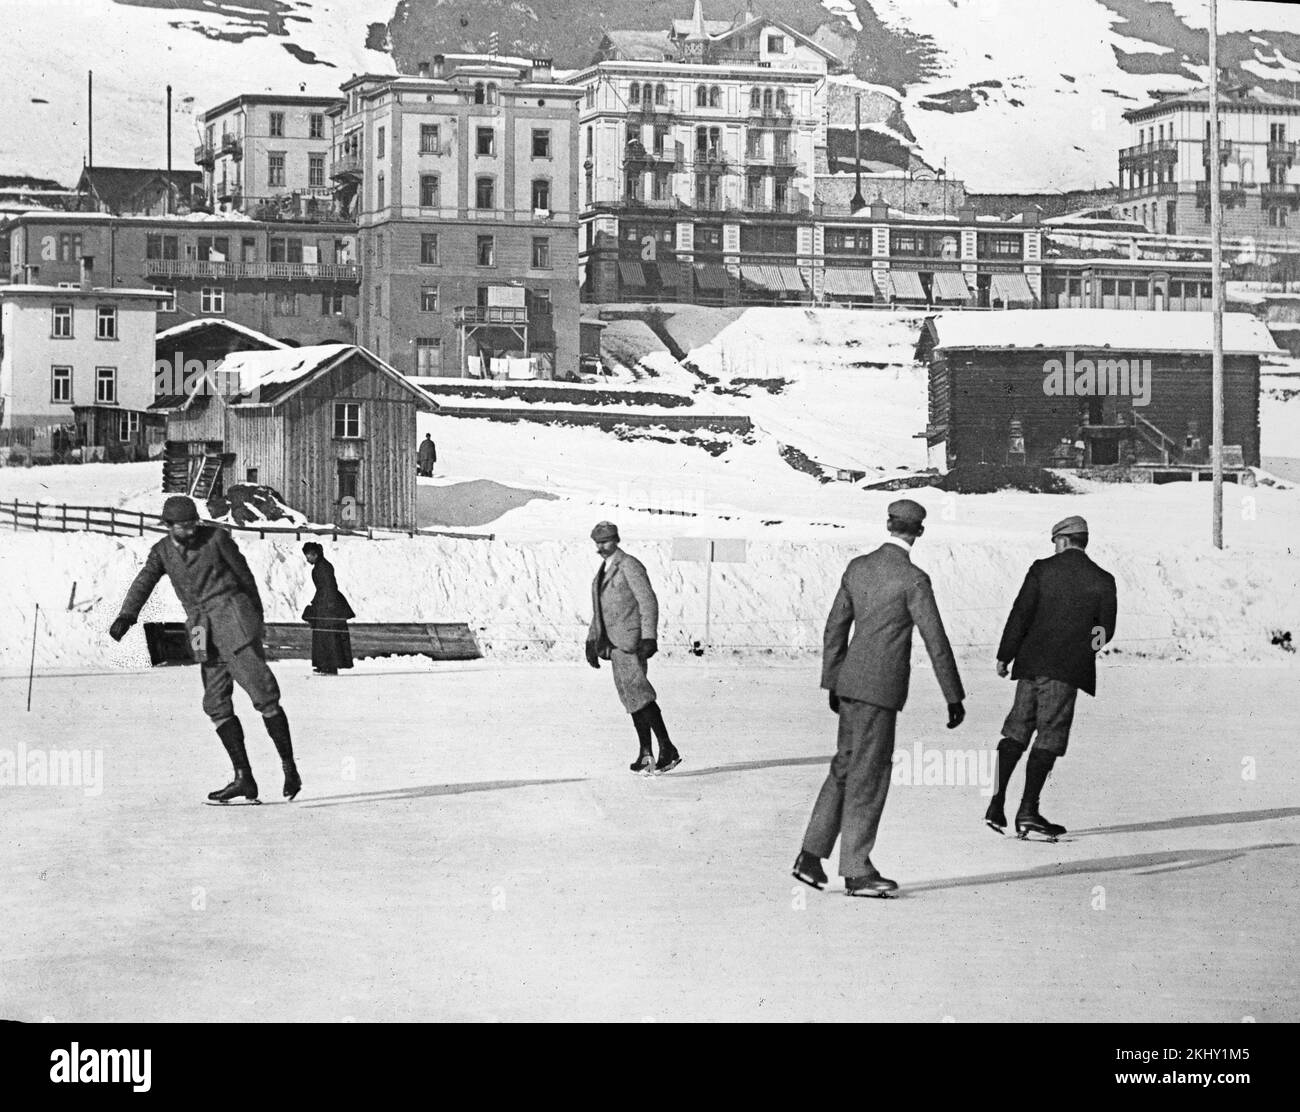 Una fotografia in bianco e nero dei primi anni del 20th ° secolo che mostra un gruppo di uomini che pattinano su ghiaccio nella città di San Moritz nelle Alpi svizzere. Foto Stock